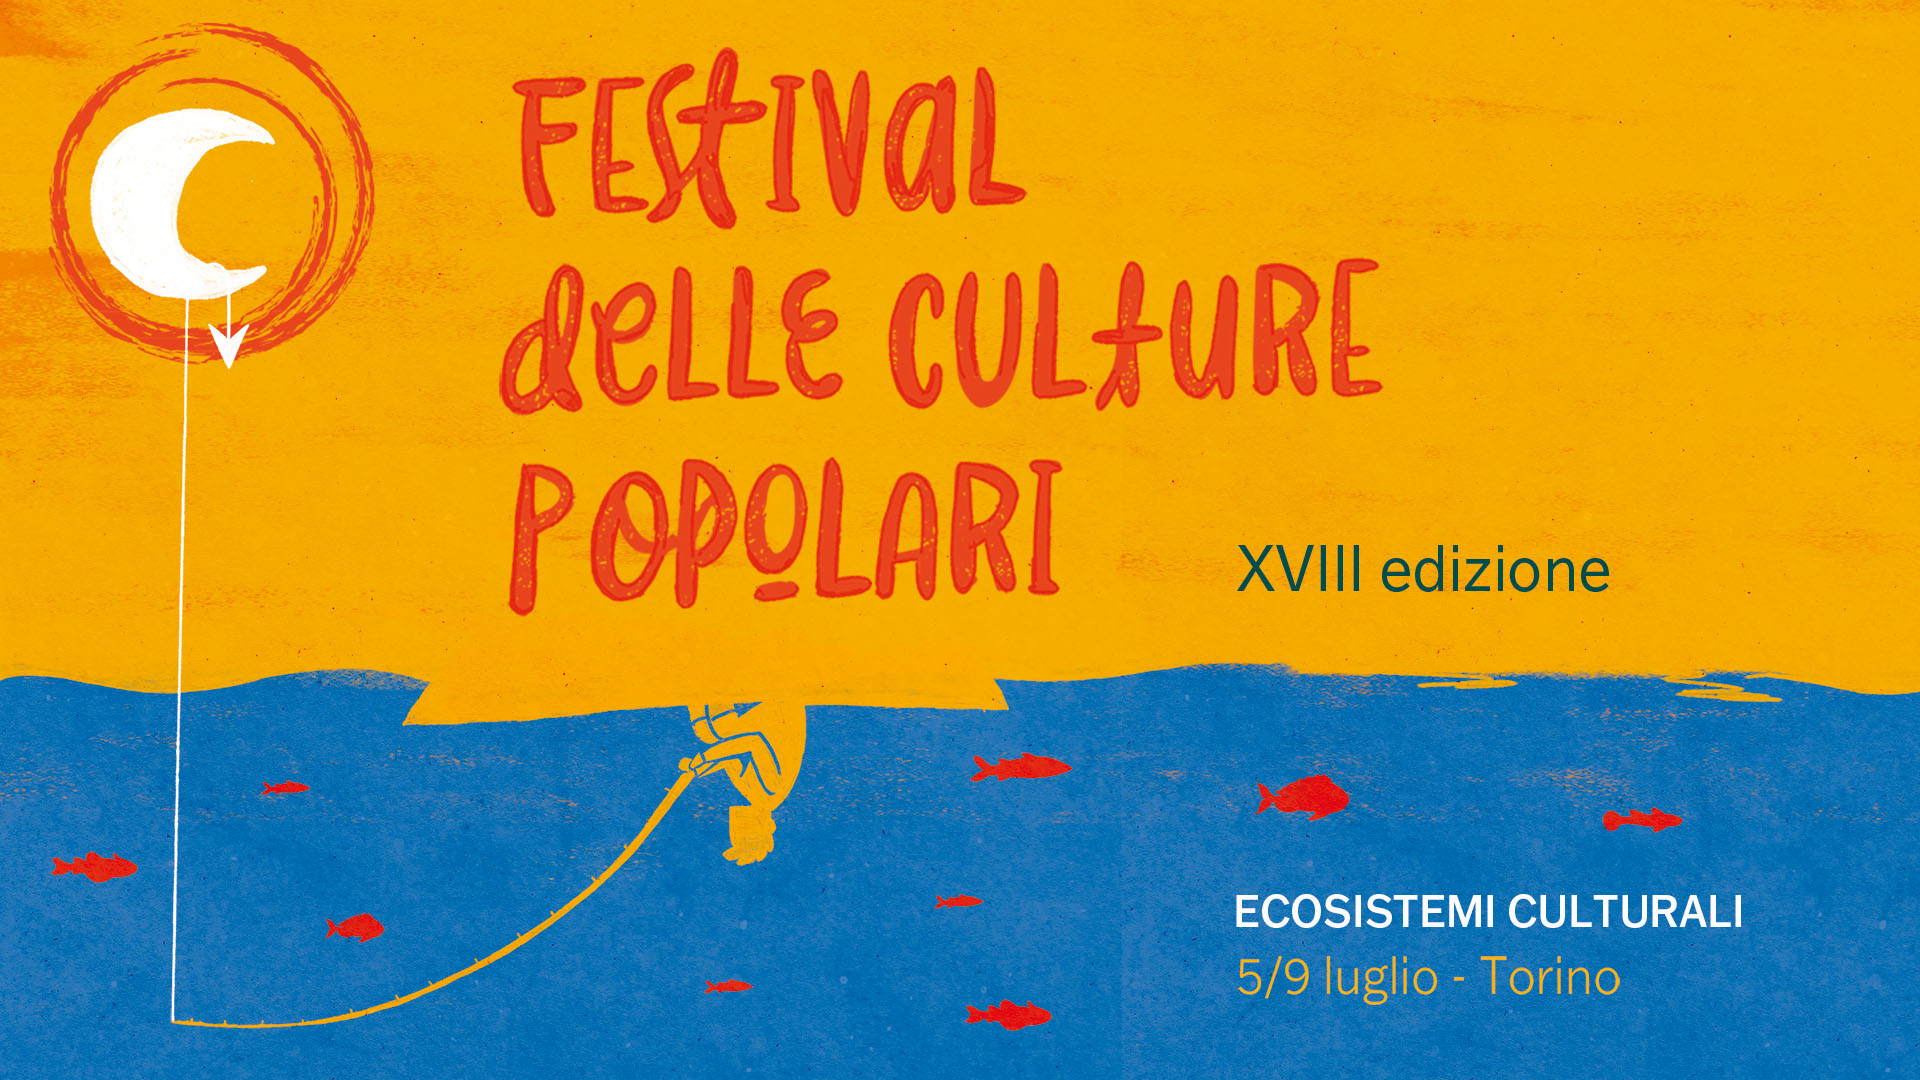 Festival delle culture popolari: programma in Aurora e Porta Palazzo